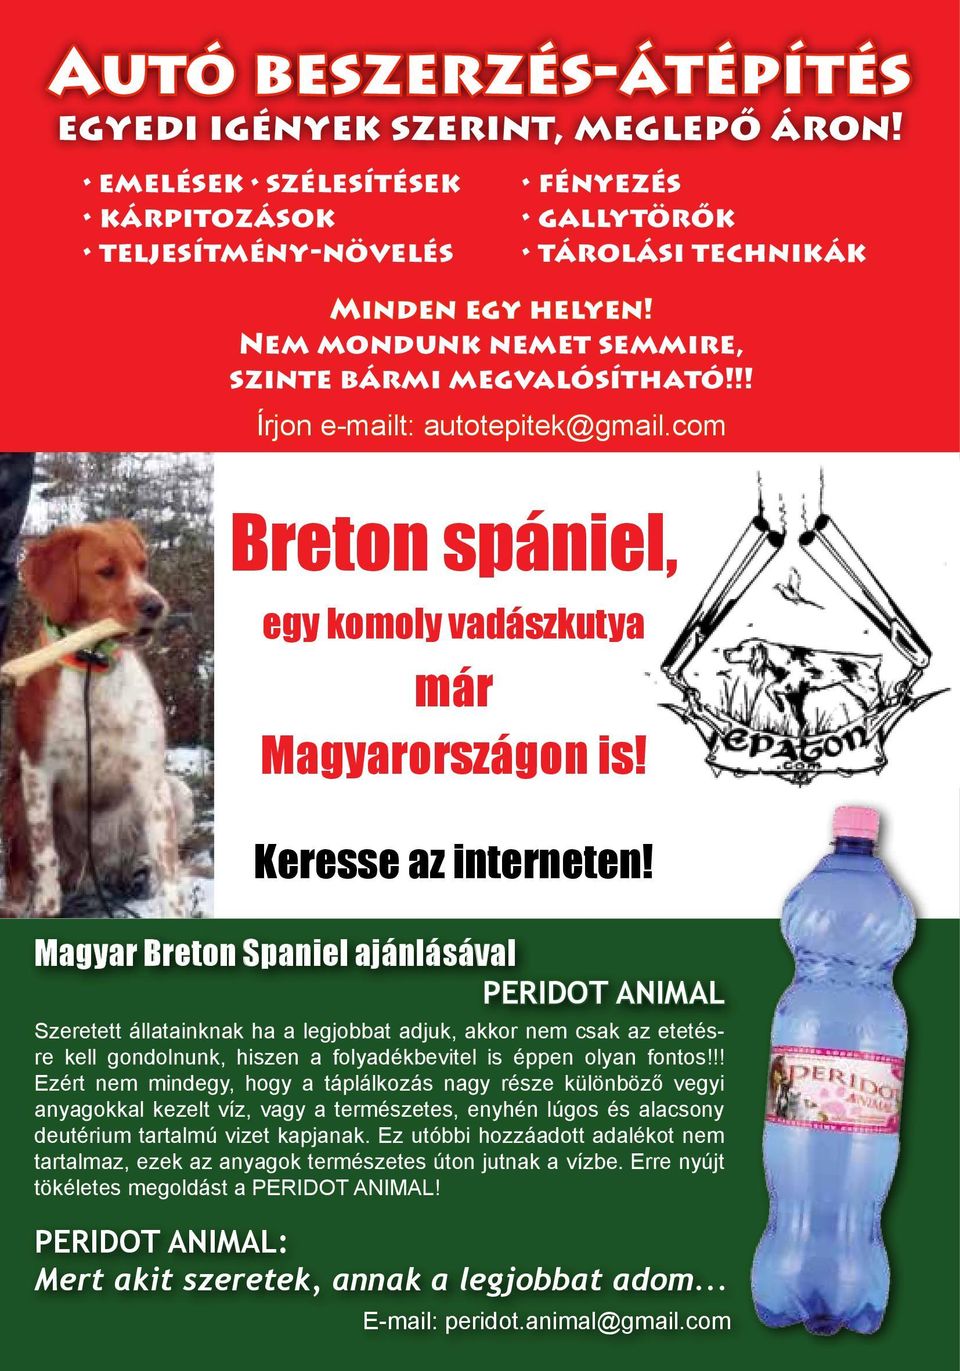 Magyar Breton Spaniel ajánlásával PERIDOT ANIMAL Szeretett állatainknak ha a legjobbat adjuk, akkor nem csak az etetésre kell gondolnunk, hiszen a folyadékbevitel is éppen olyan fontos!